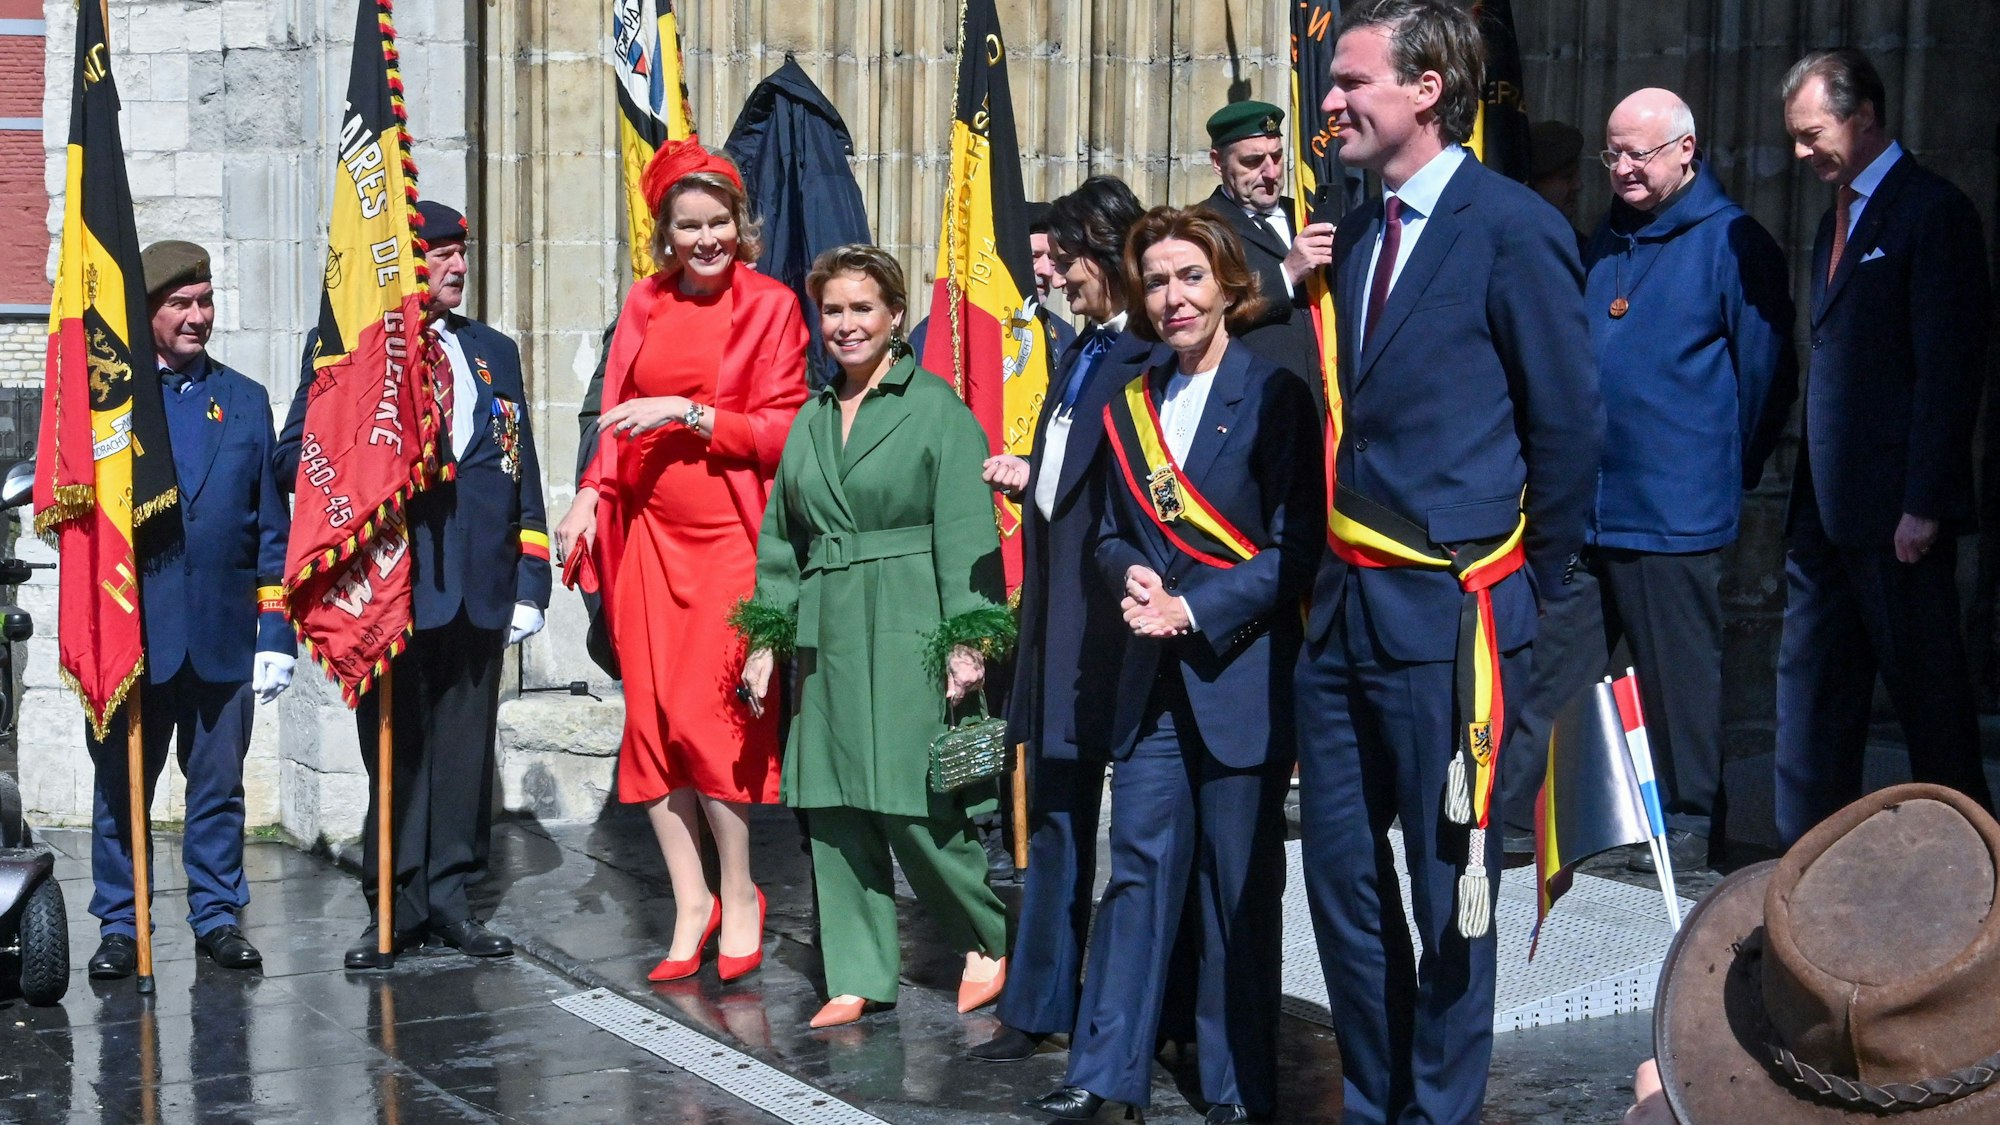 (Von links) Königin Mathilde, Großherzogin Maria Teresa, die Präsidentin des belgischen Senats, Stephanie D'Hose, die Gouverneurin der Provinz Ostflandern, Carina Van Cauter, und der Bürgermeister von Gent, Mathias De Clercq, bei einem Besuch der Sint-Baafskathedraal.